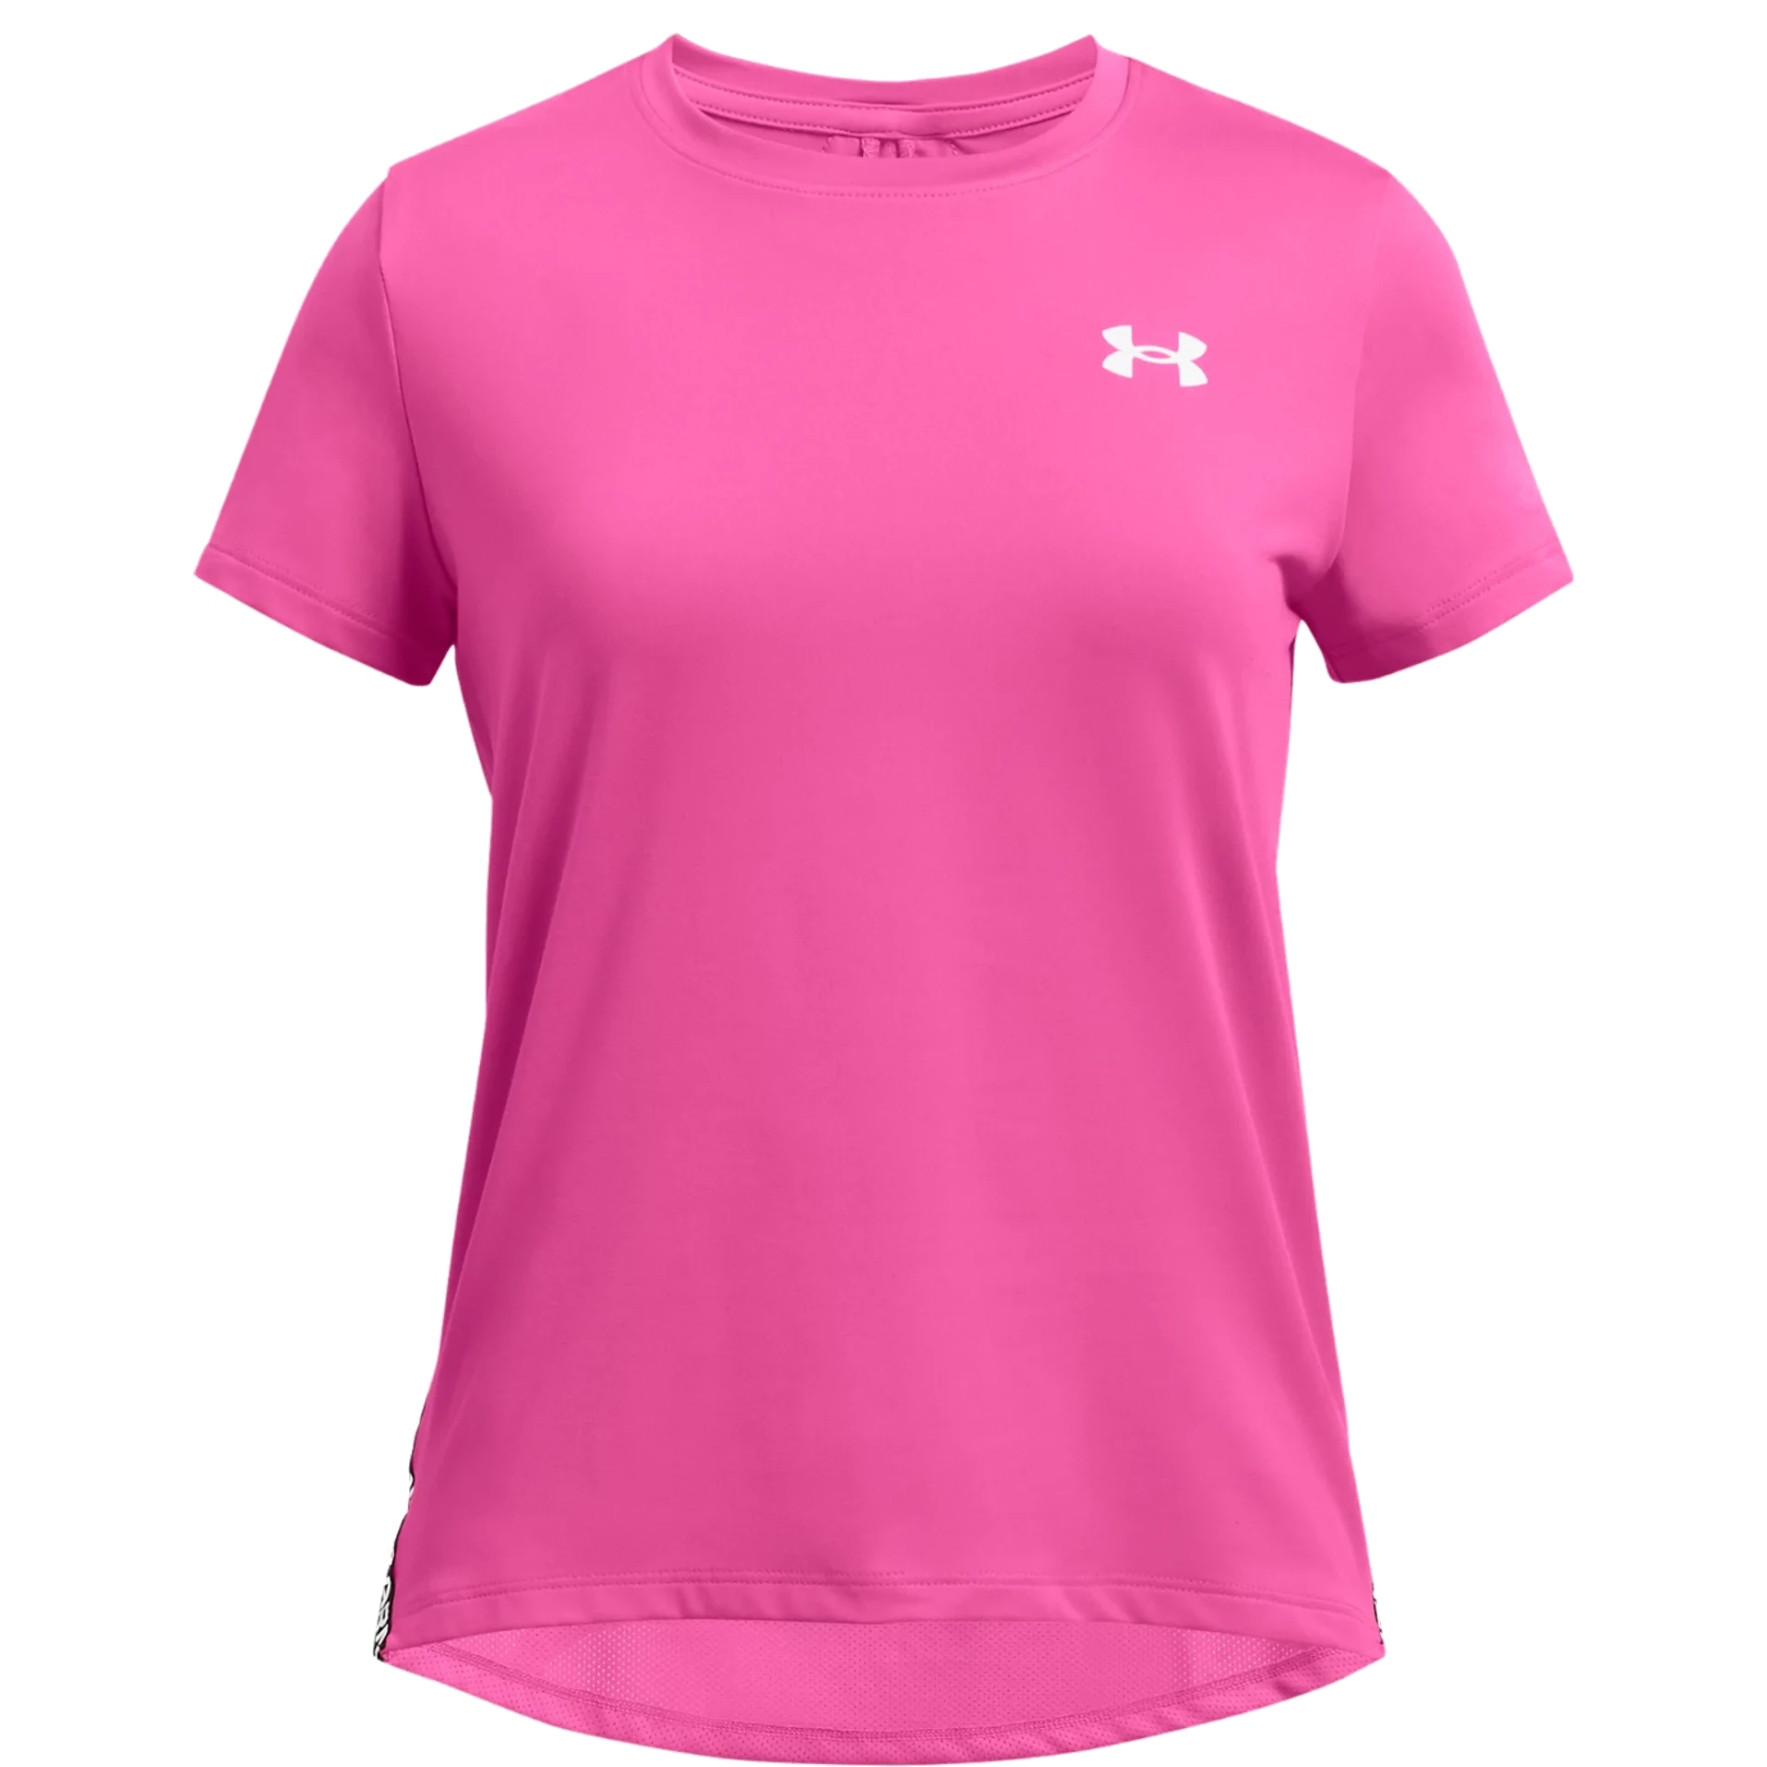 Produktbild von Under Armour UA Knockout T-Shirt Mädchen - Rebel Pink/White